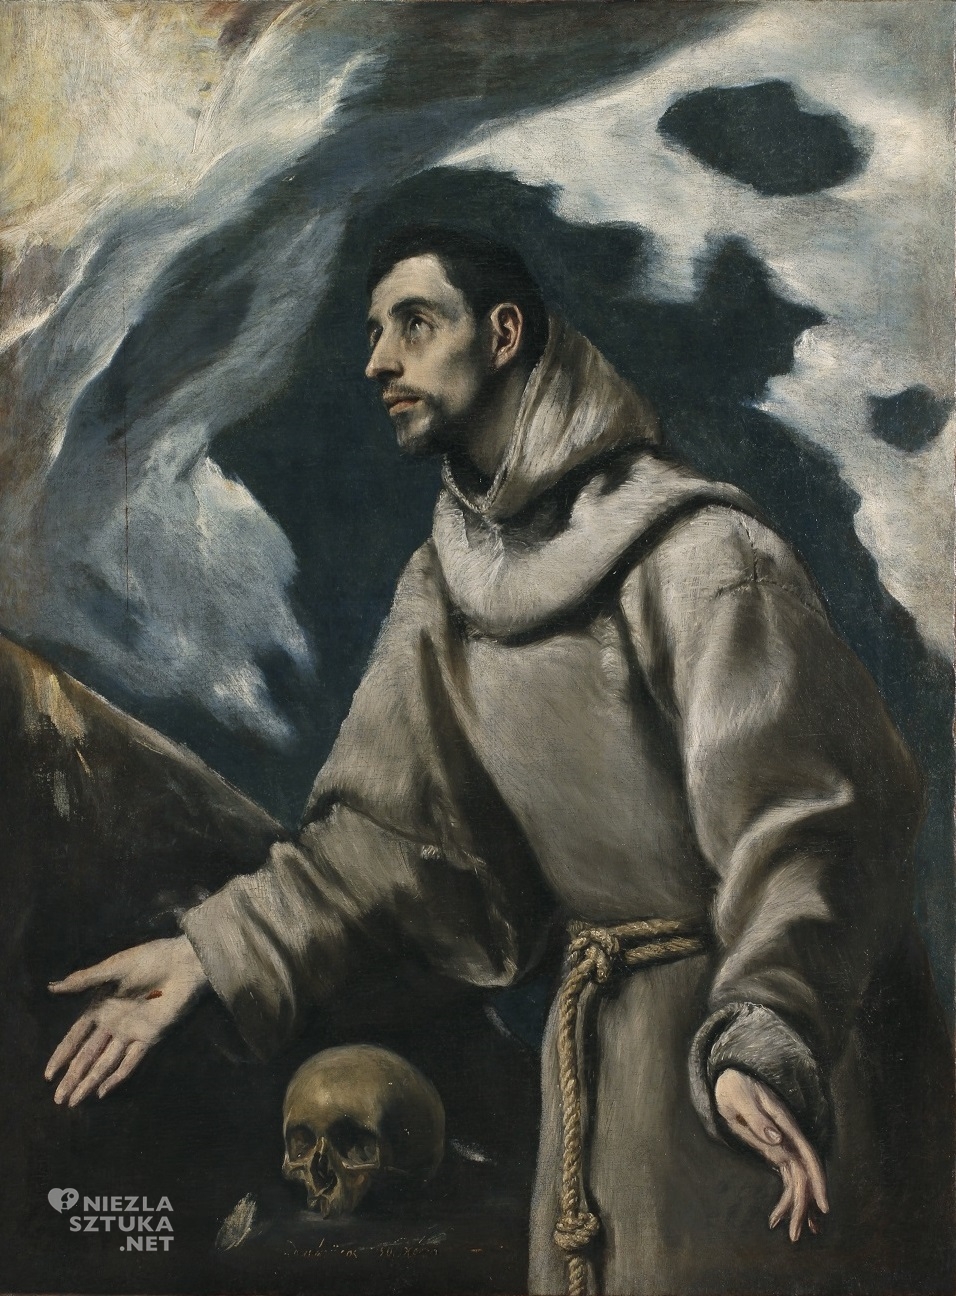 El Greco, Ekstaza św. Franciszka, niezła sztuka